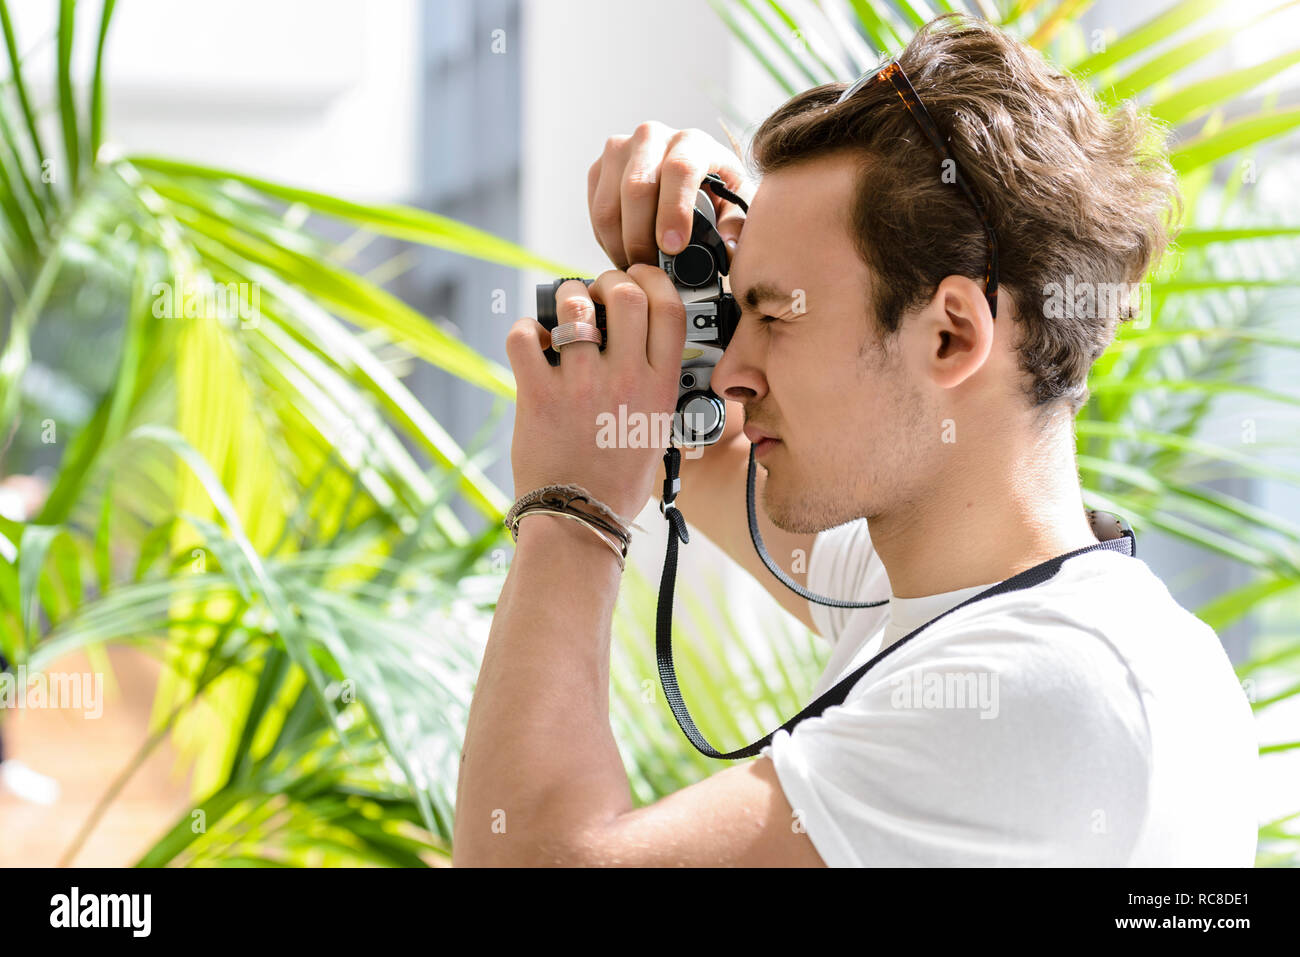 Man taking photo, usine de palm en arrière-plan Banque D'Images